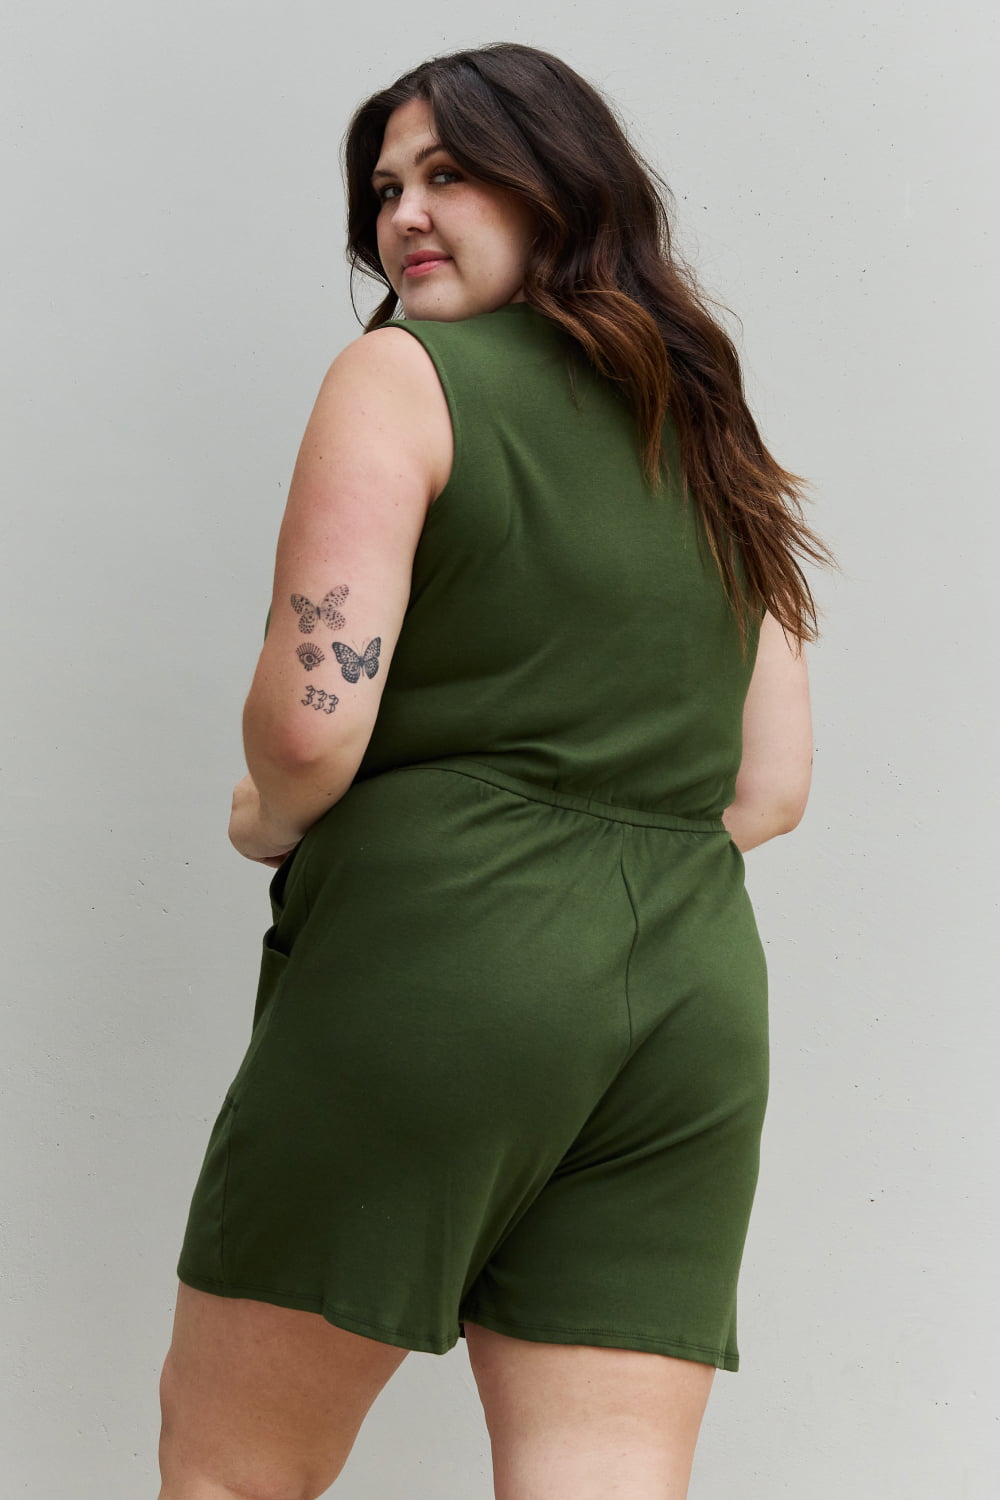 Zenana Forever Yours Full Size V-Neck Sleeveless Romper in Army Green - SELFTRITSS